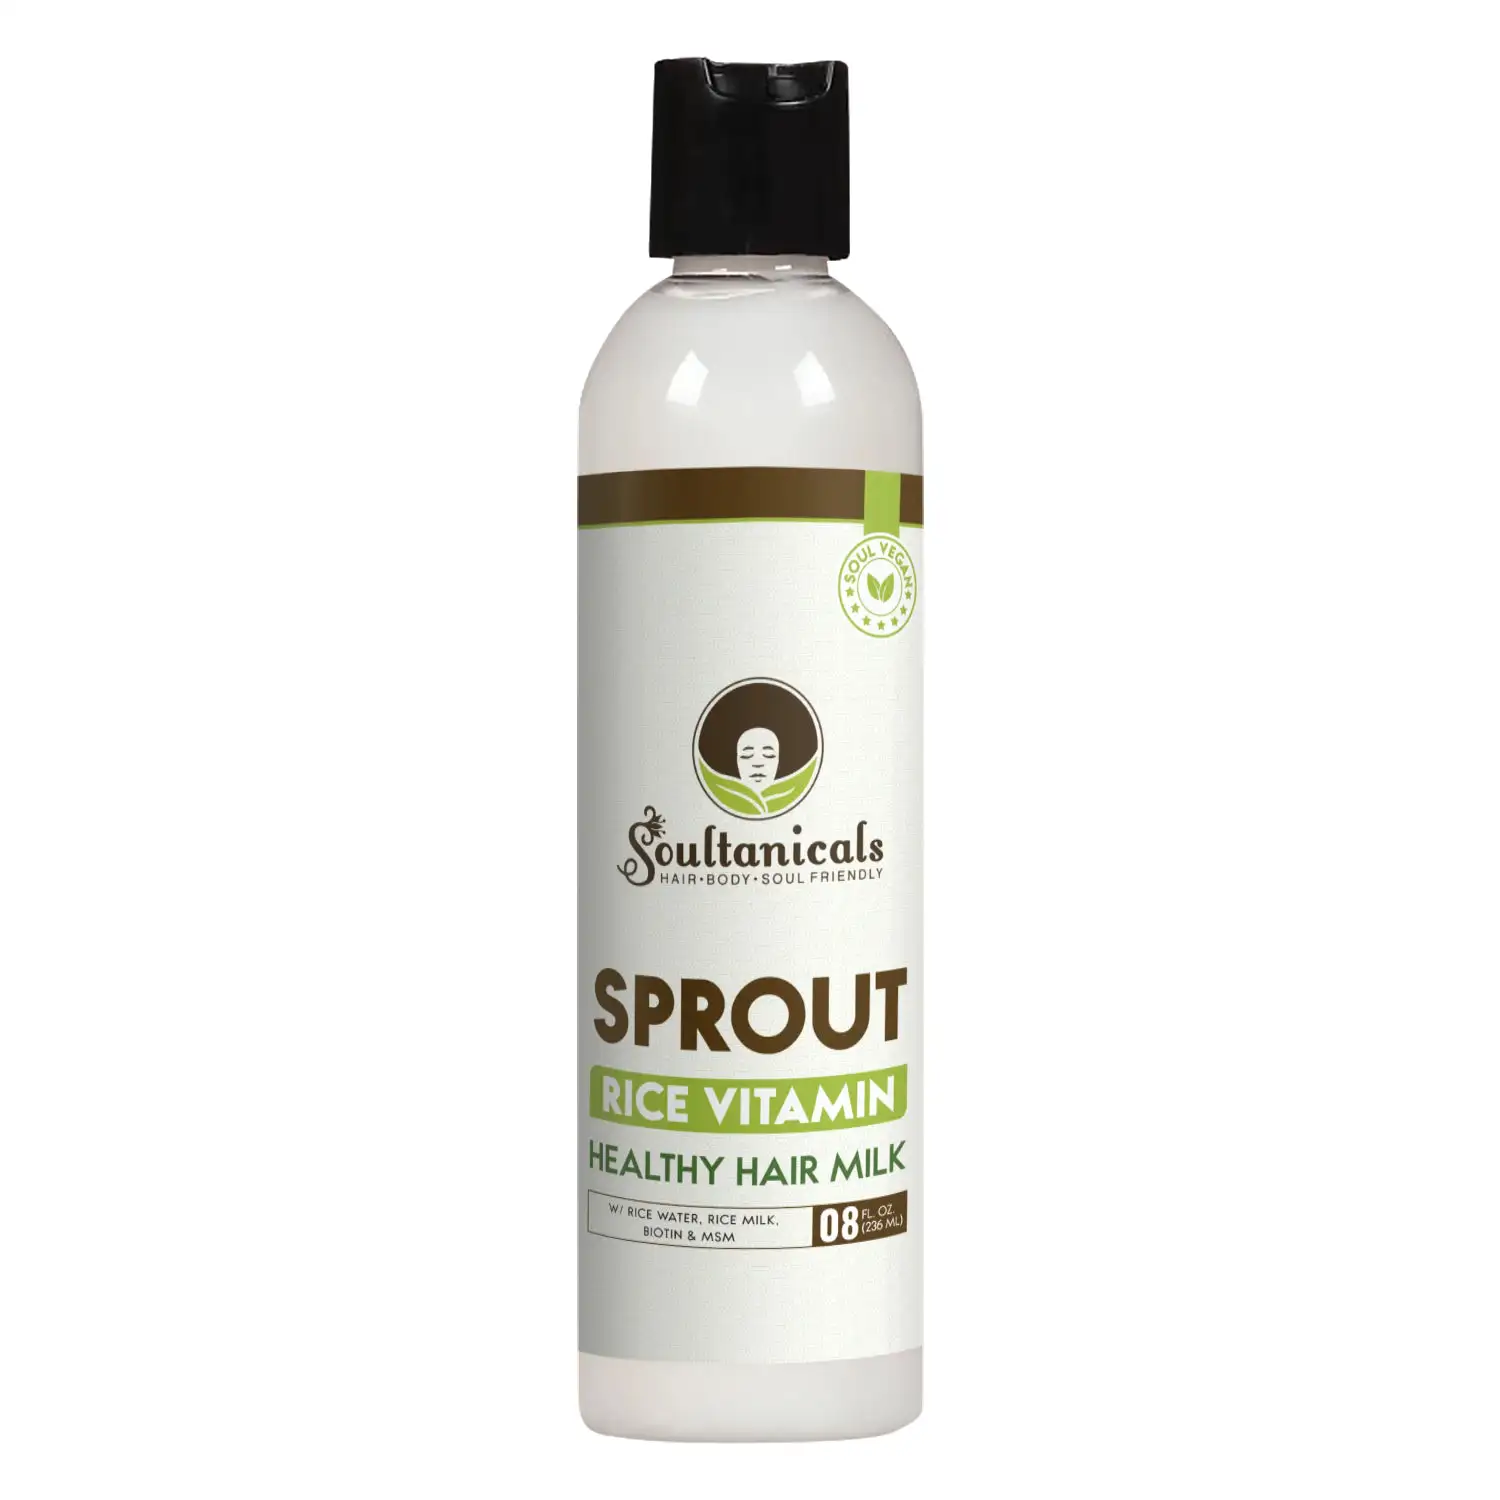 Soultanicals sprout rice vitamin healthy hair milk 8oz_4243. DIAYTAR SENEGAL - L'Art de Choisir, l'Art de Vivre. Parcourez notre boutique en ligne et choisissez parmi des produits de qualité qui ajoutent de l'élégance à votre quotidien.